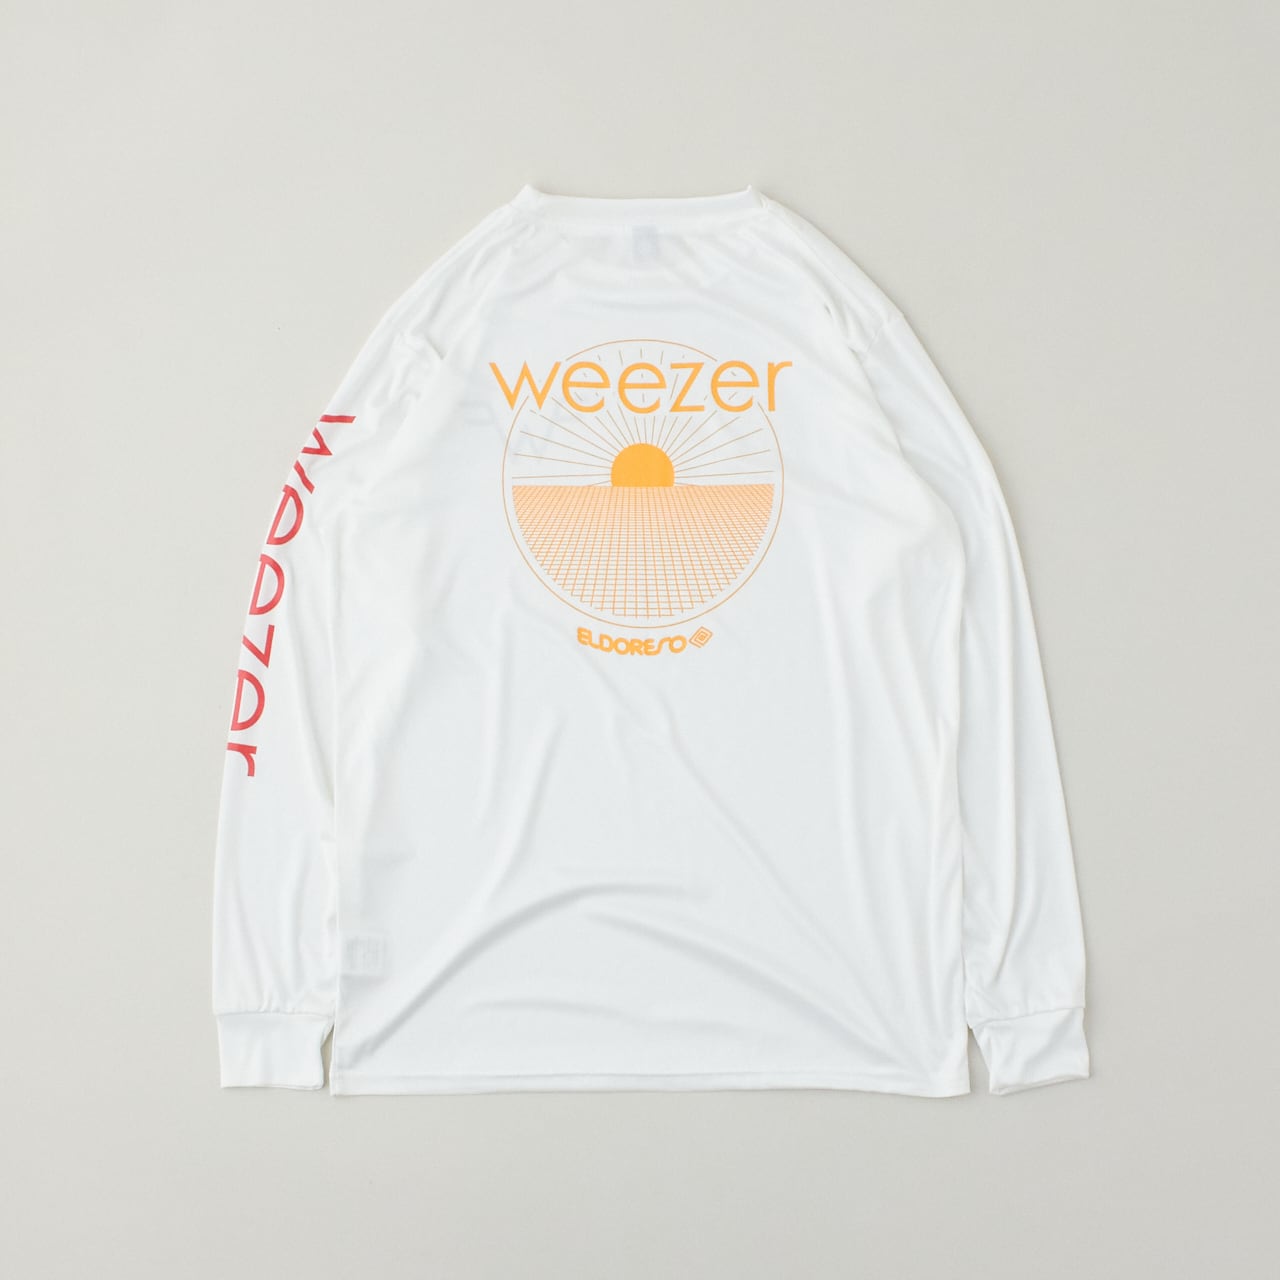 ELDORESO(エルドレッソ)weezer-E6 Long T(White) メンズ・レディース 